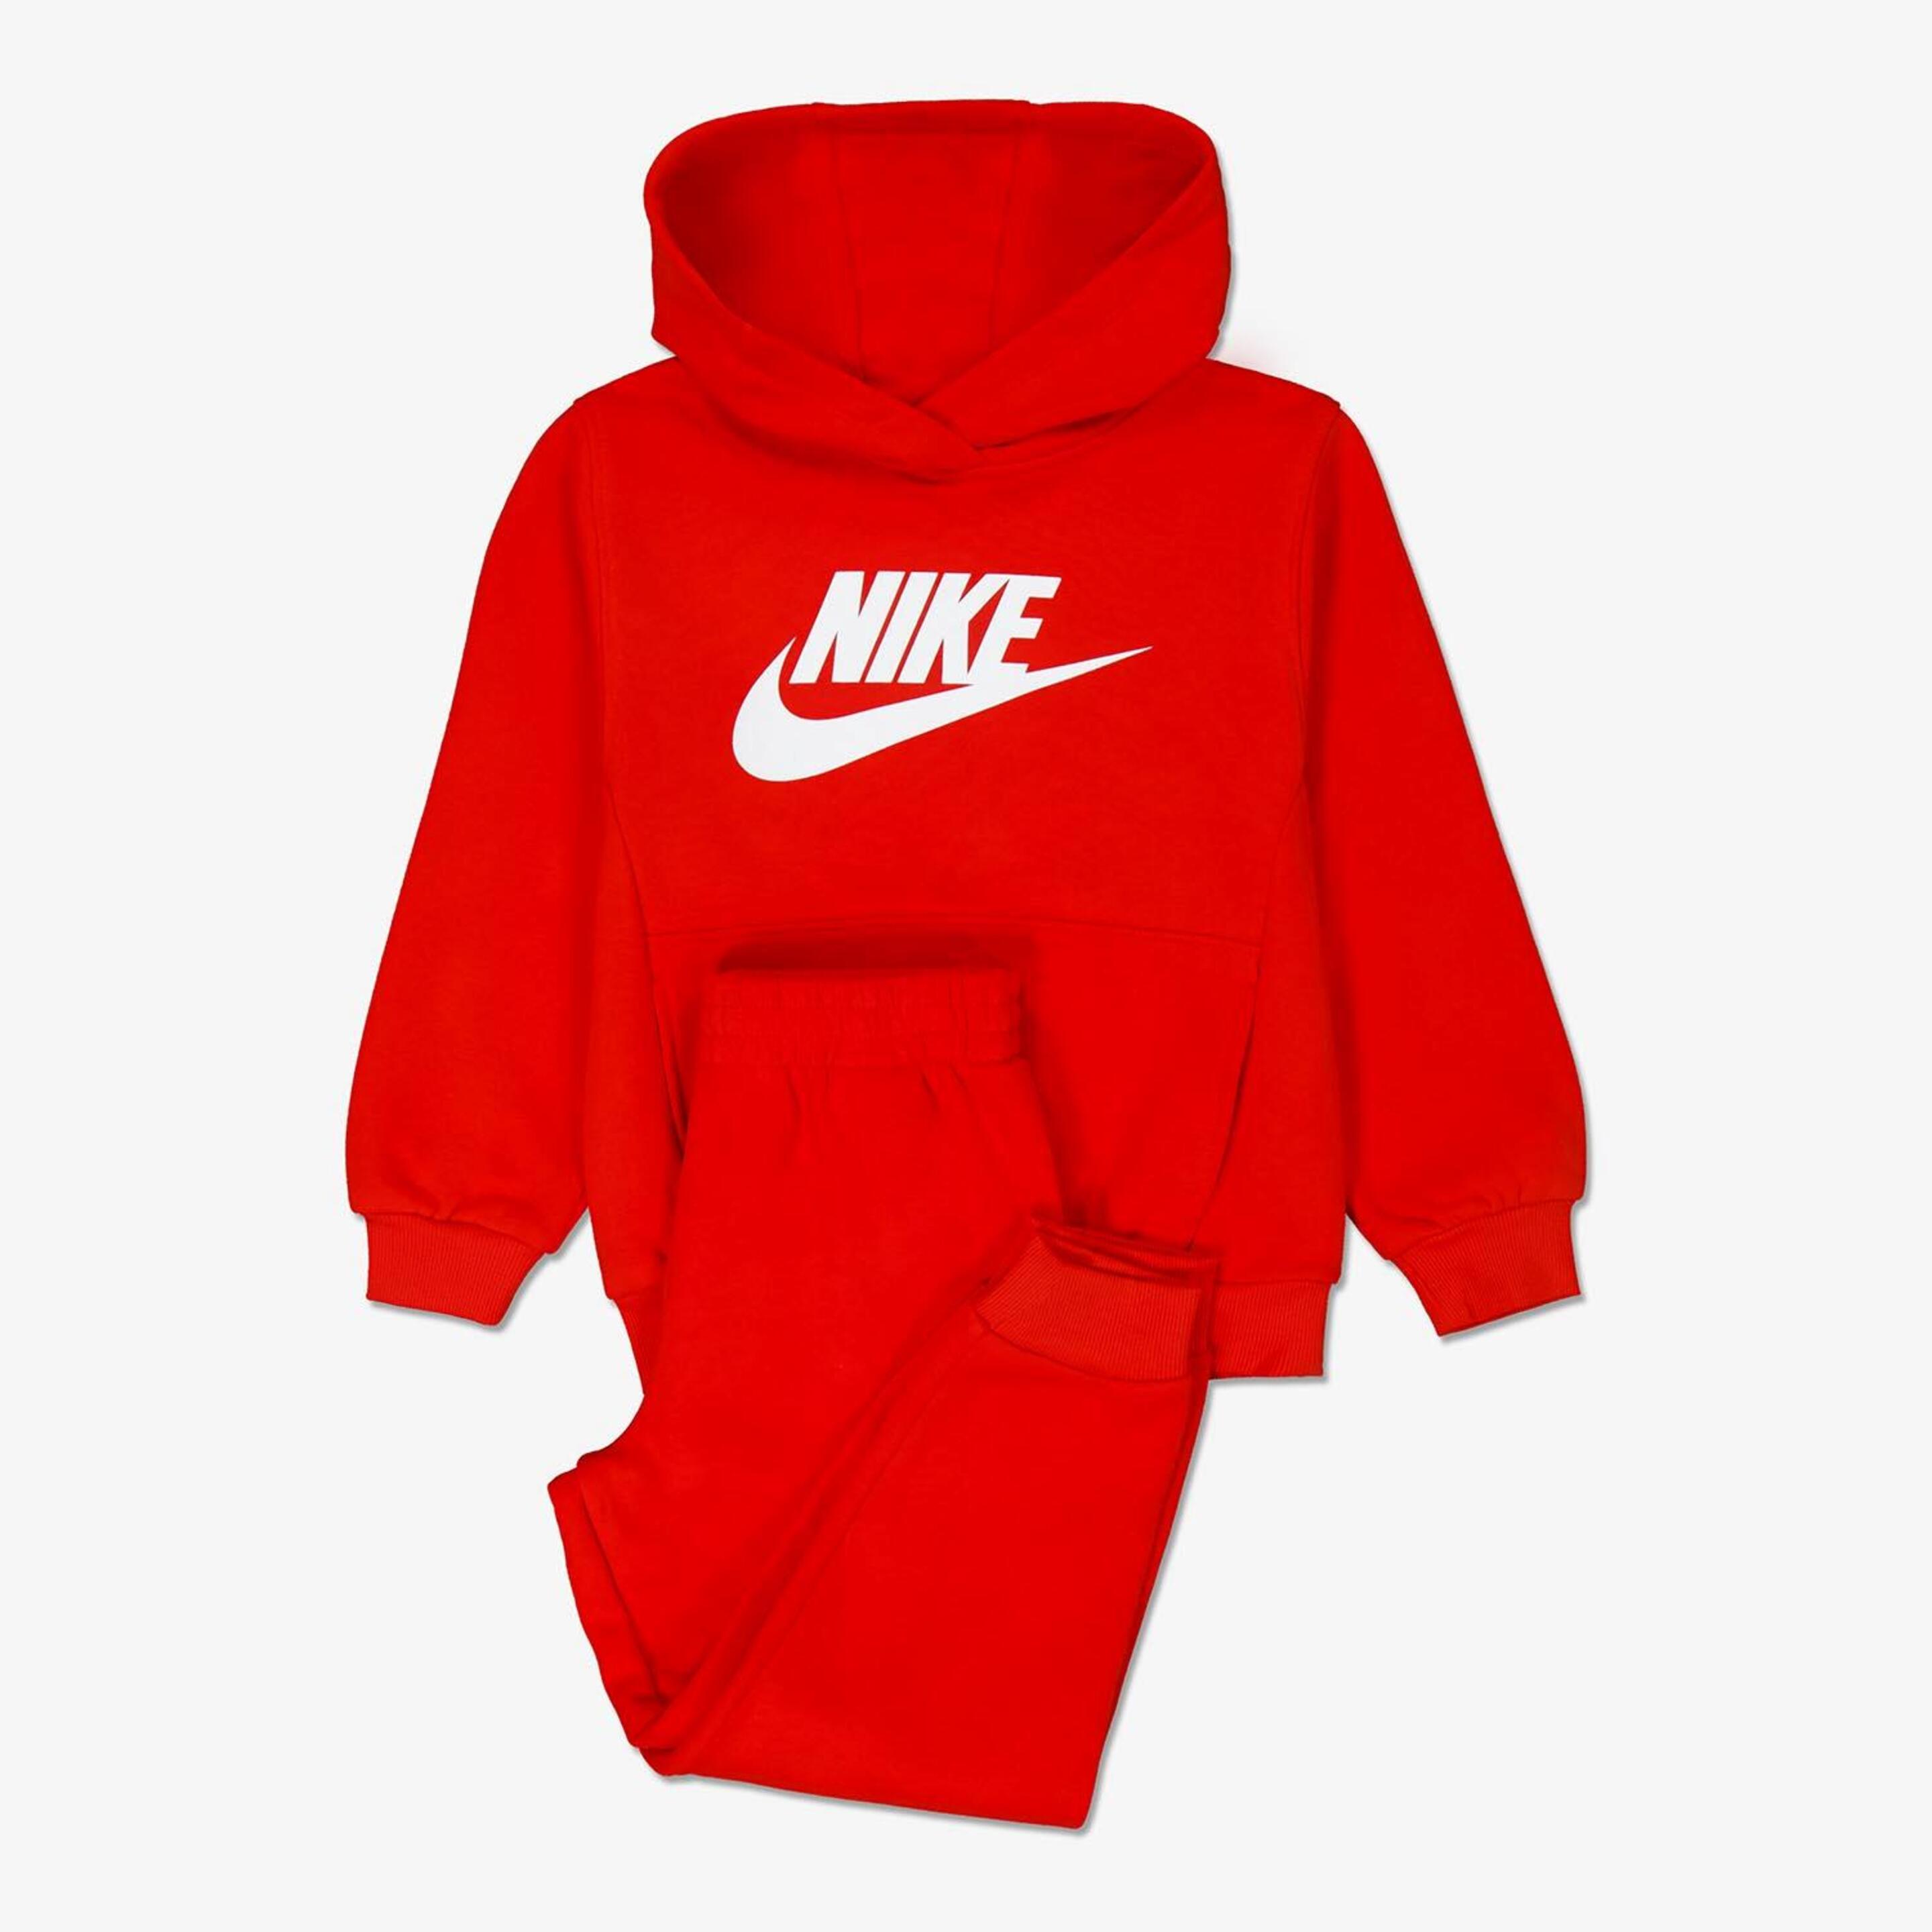 Chándal Nike - rojo - Chándal Niño